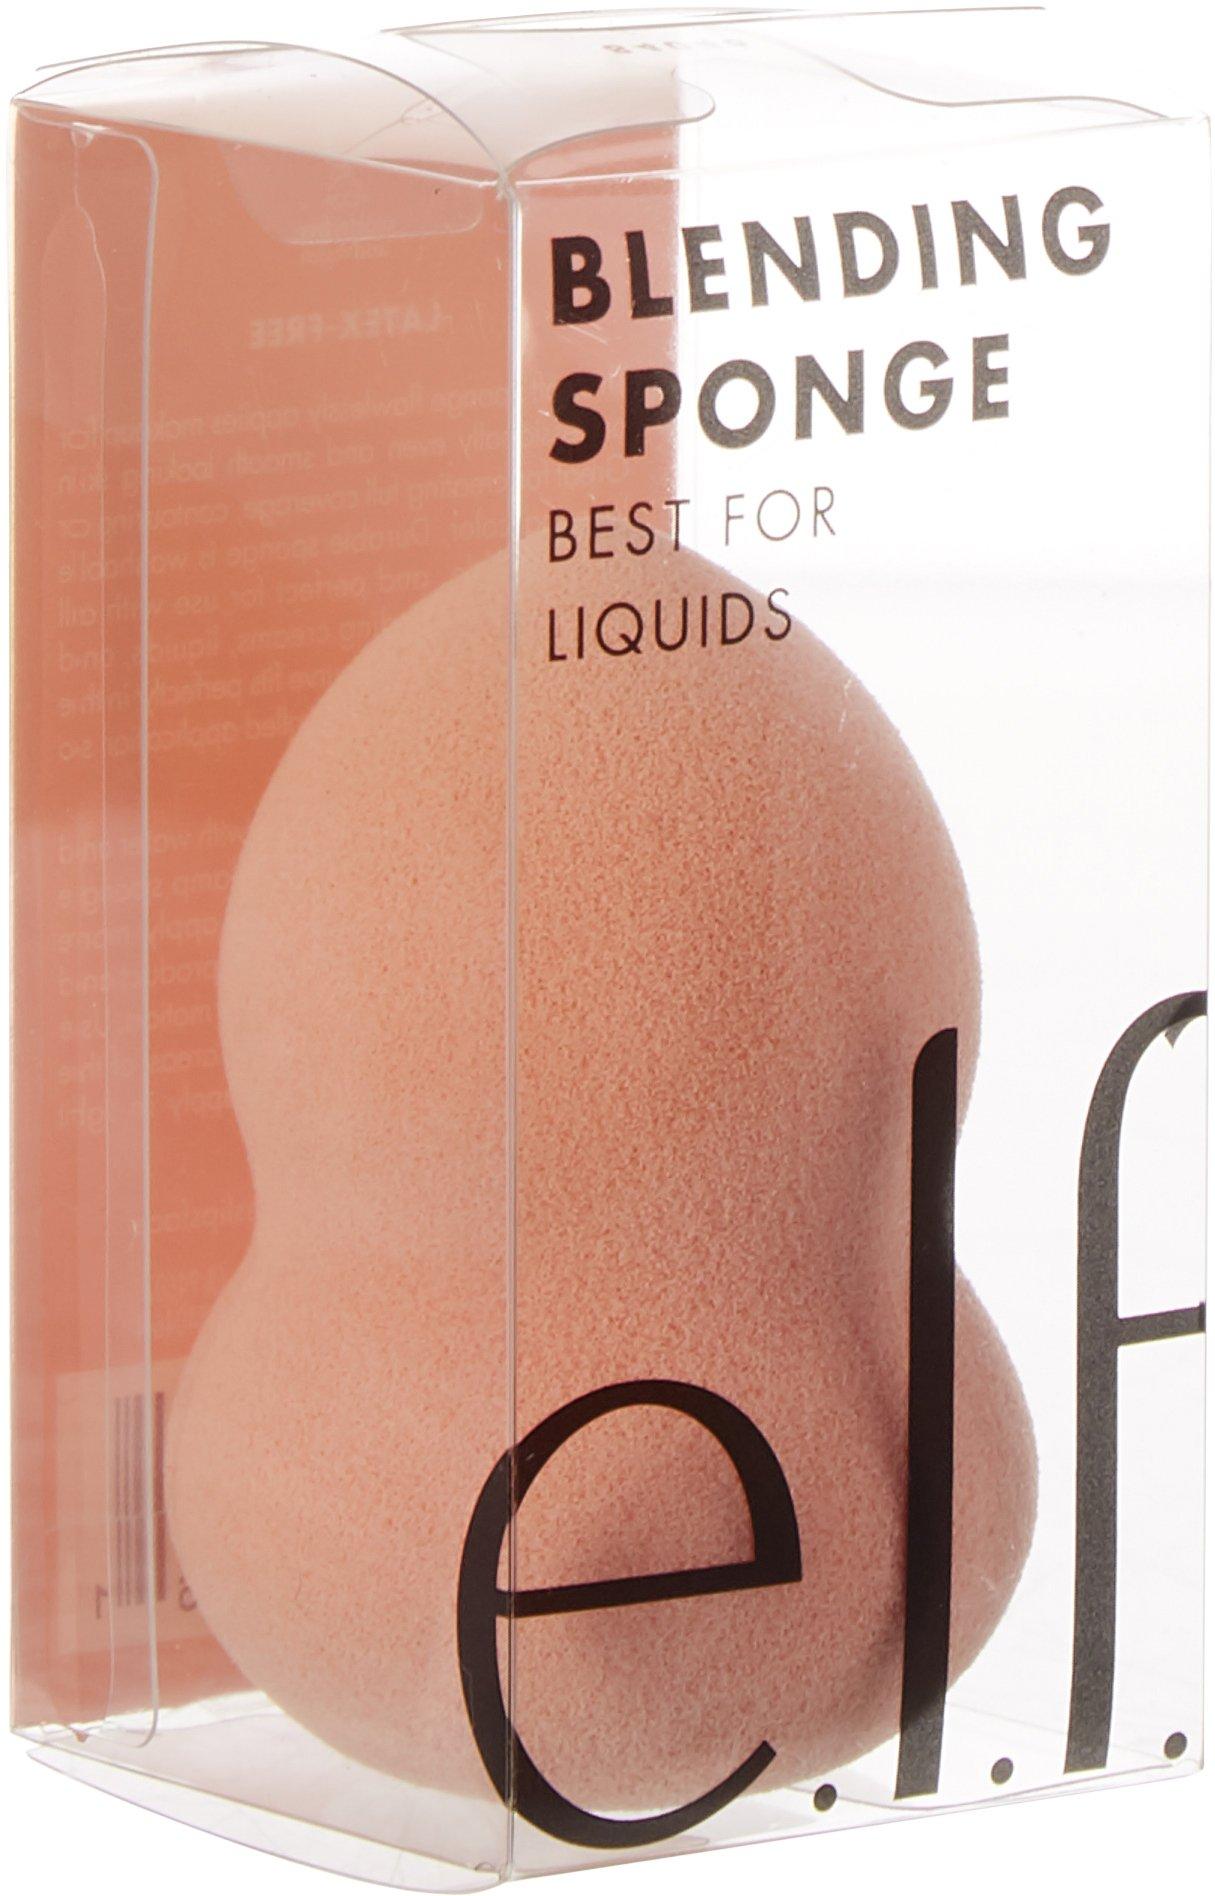 Blending Sponge